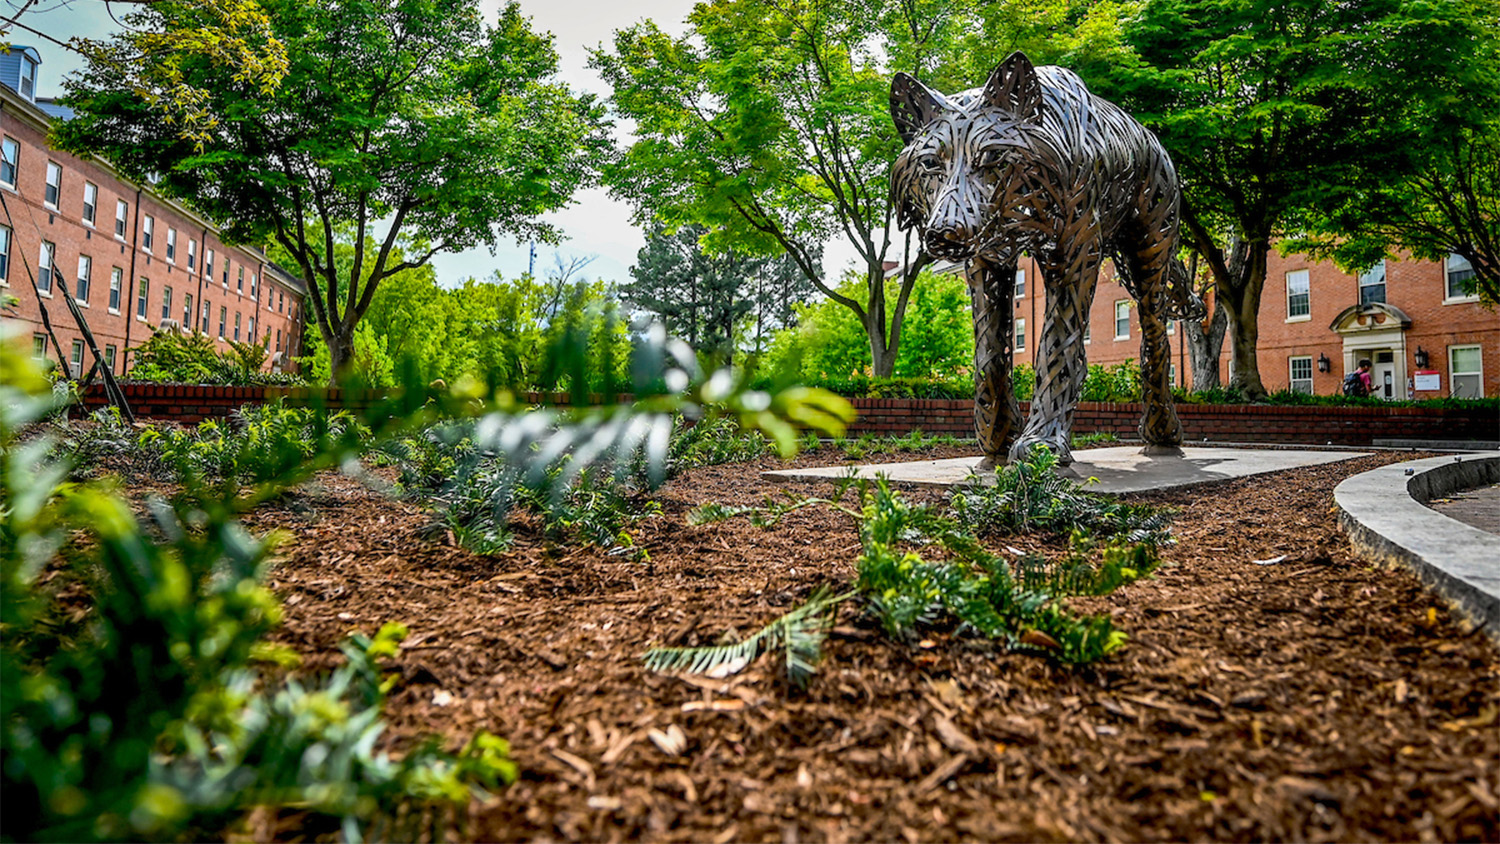 Wolf Statue